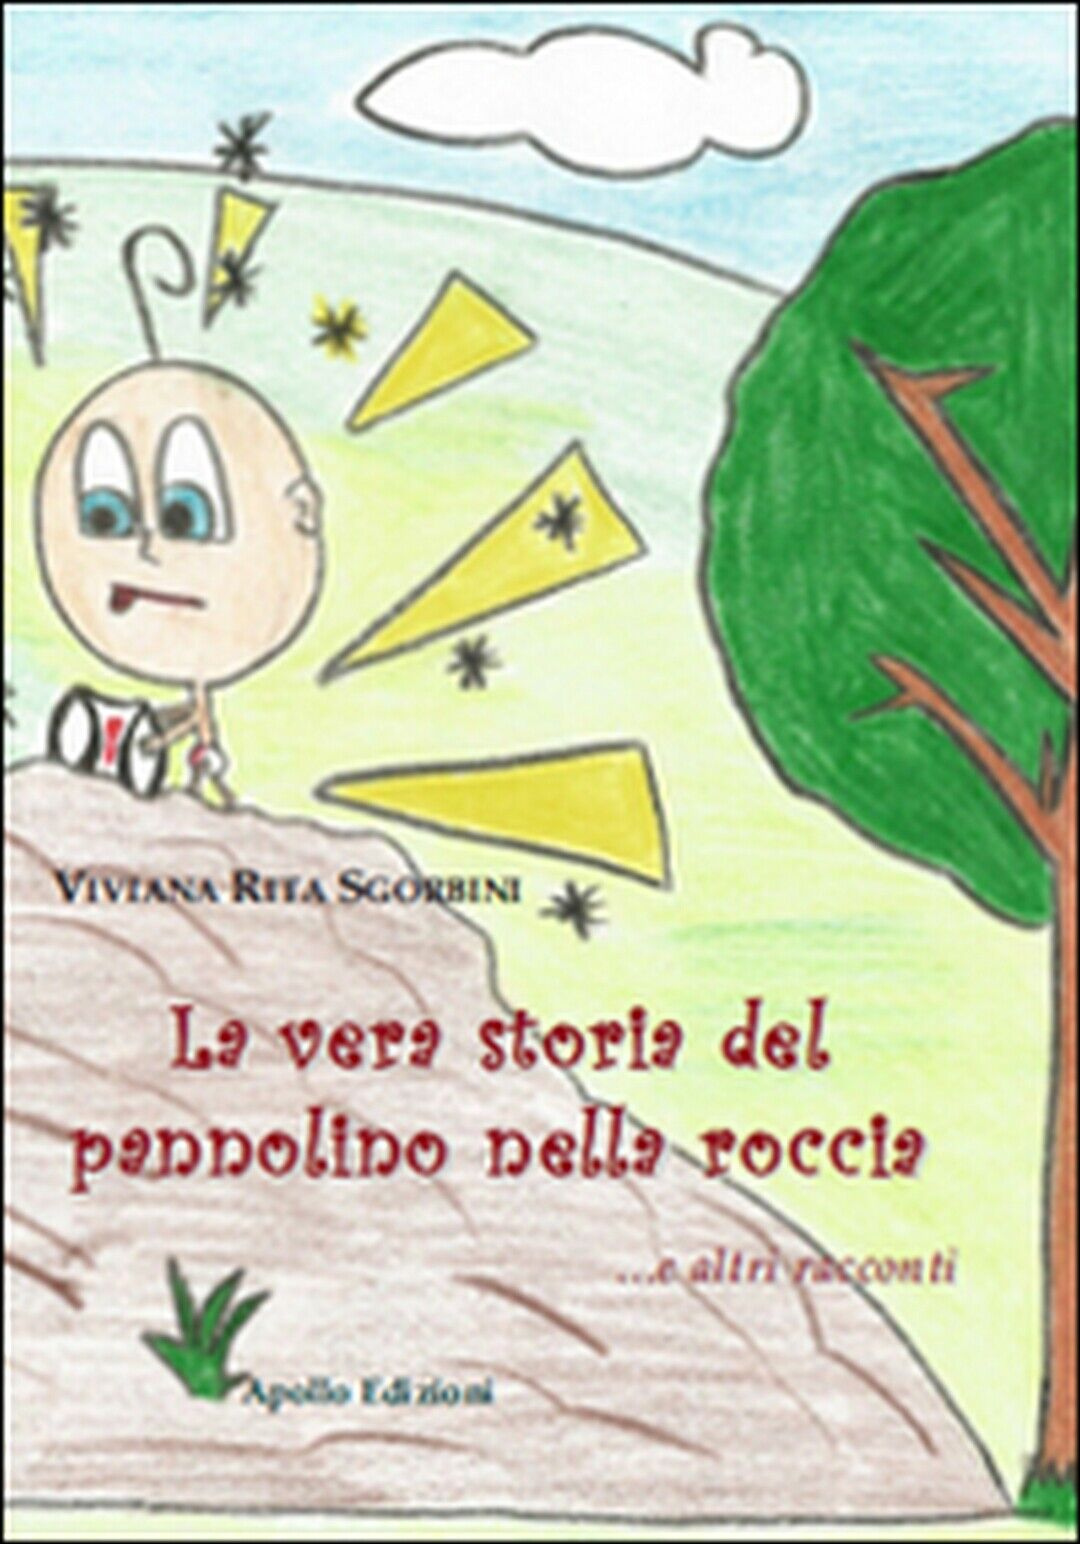 La vera storia del pannolino nella roccia... e altri racconti  di Viviana Rita A